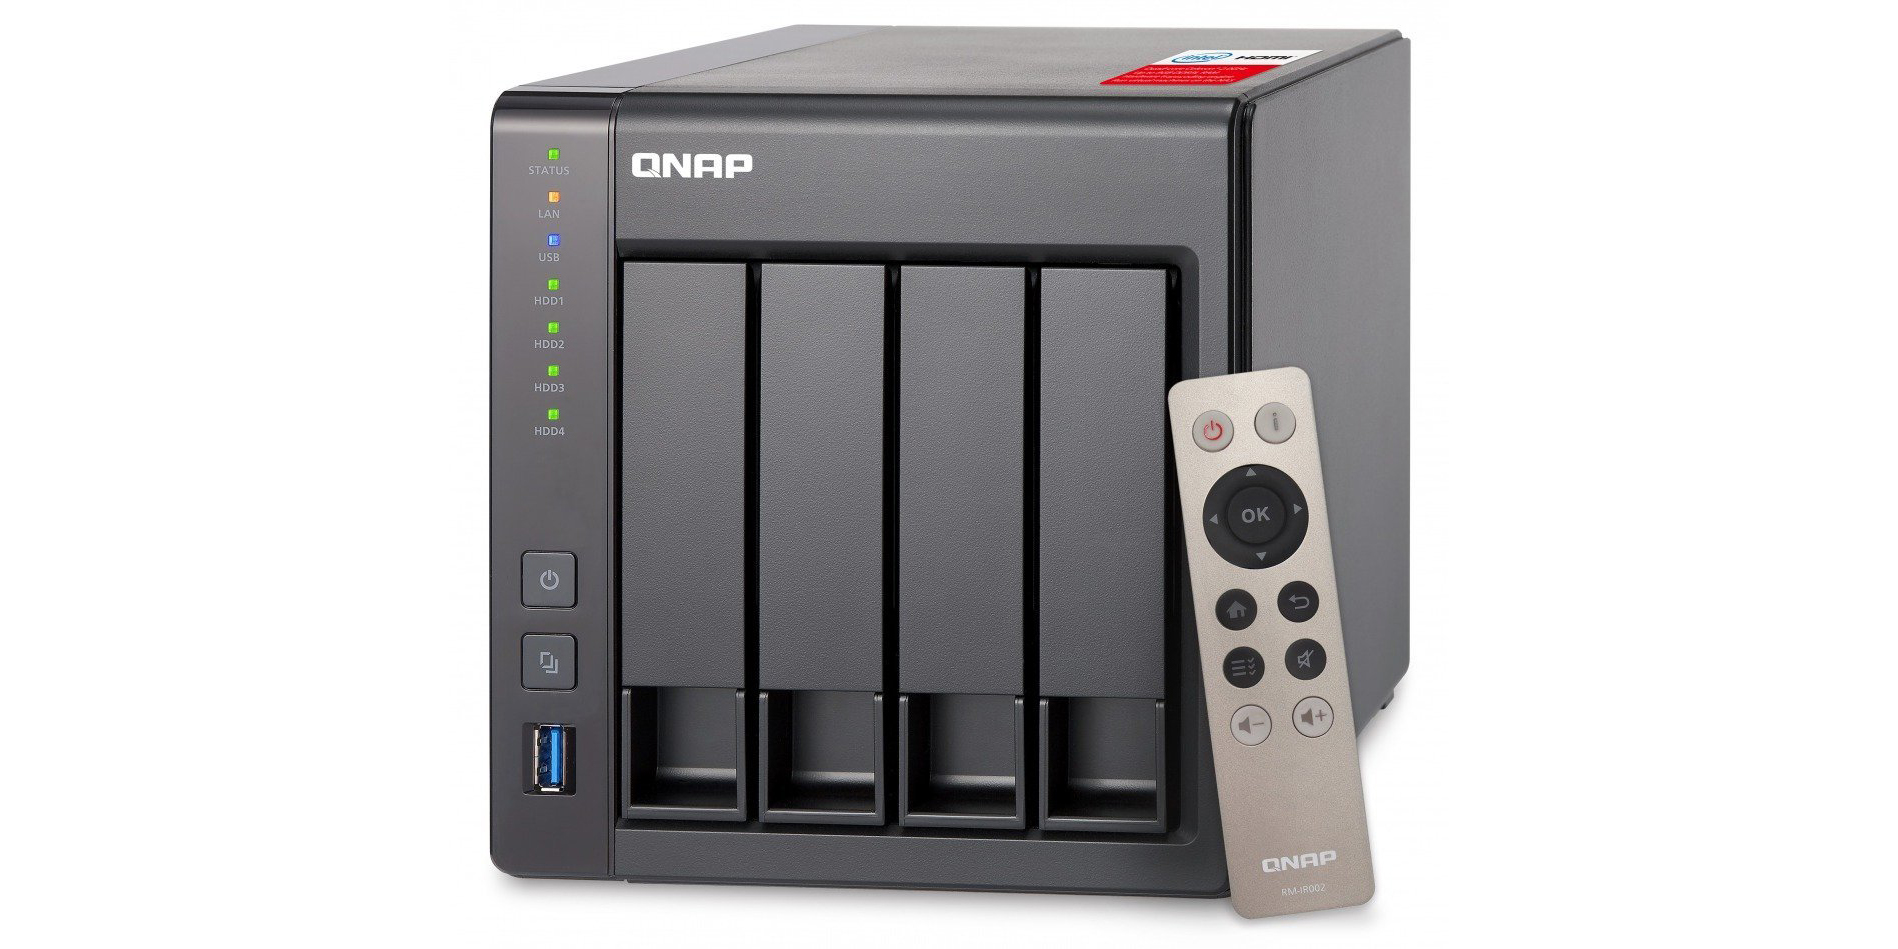 QNAP NAS + Chromecast $380 shipped